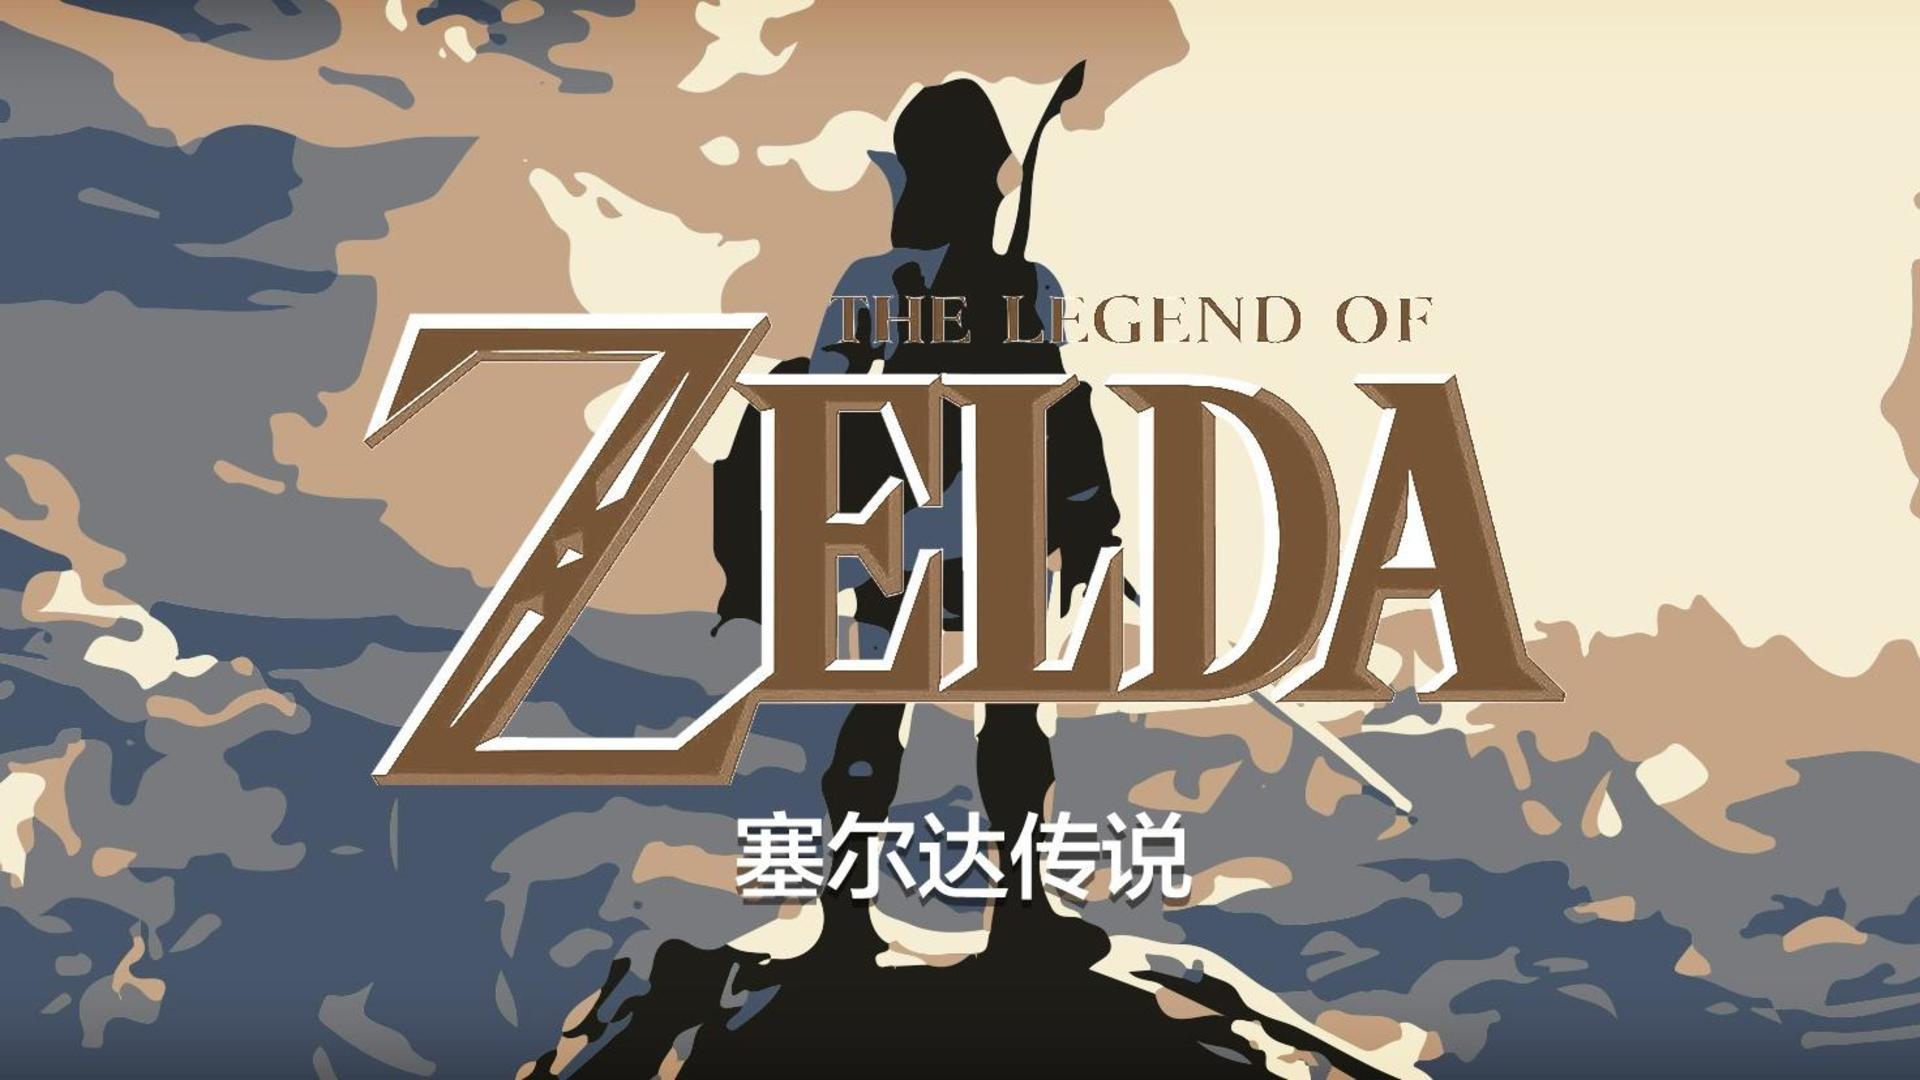 Banner of La leyenda de Zelda Aliento de lo salvaje 